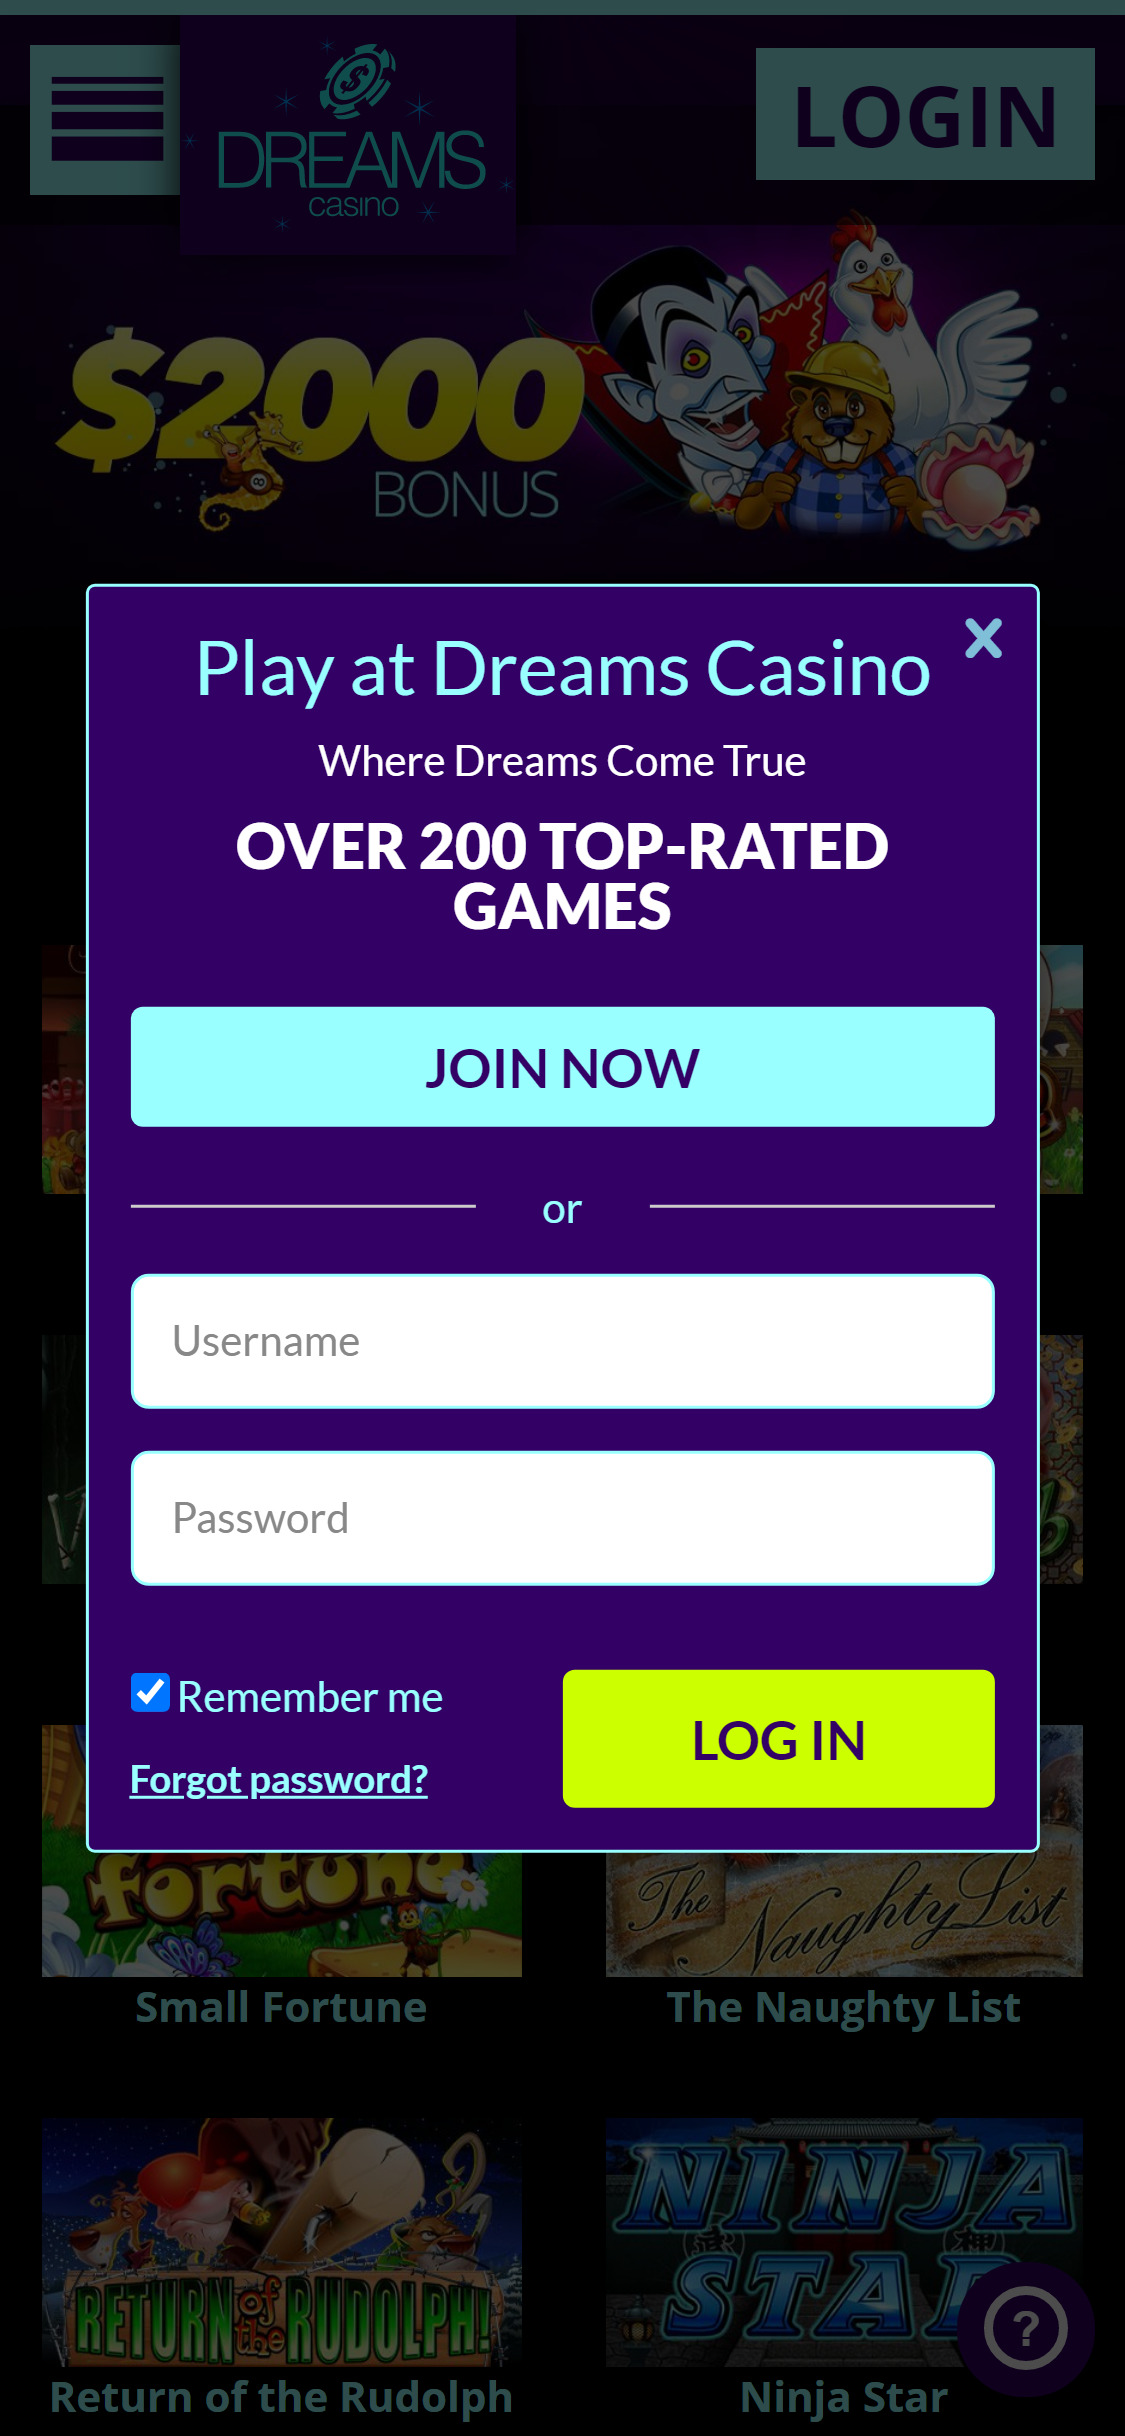 Dreams Casino Mobile Login Review